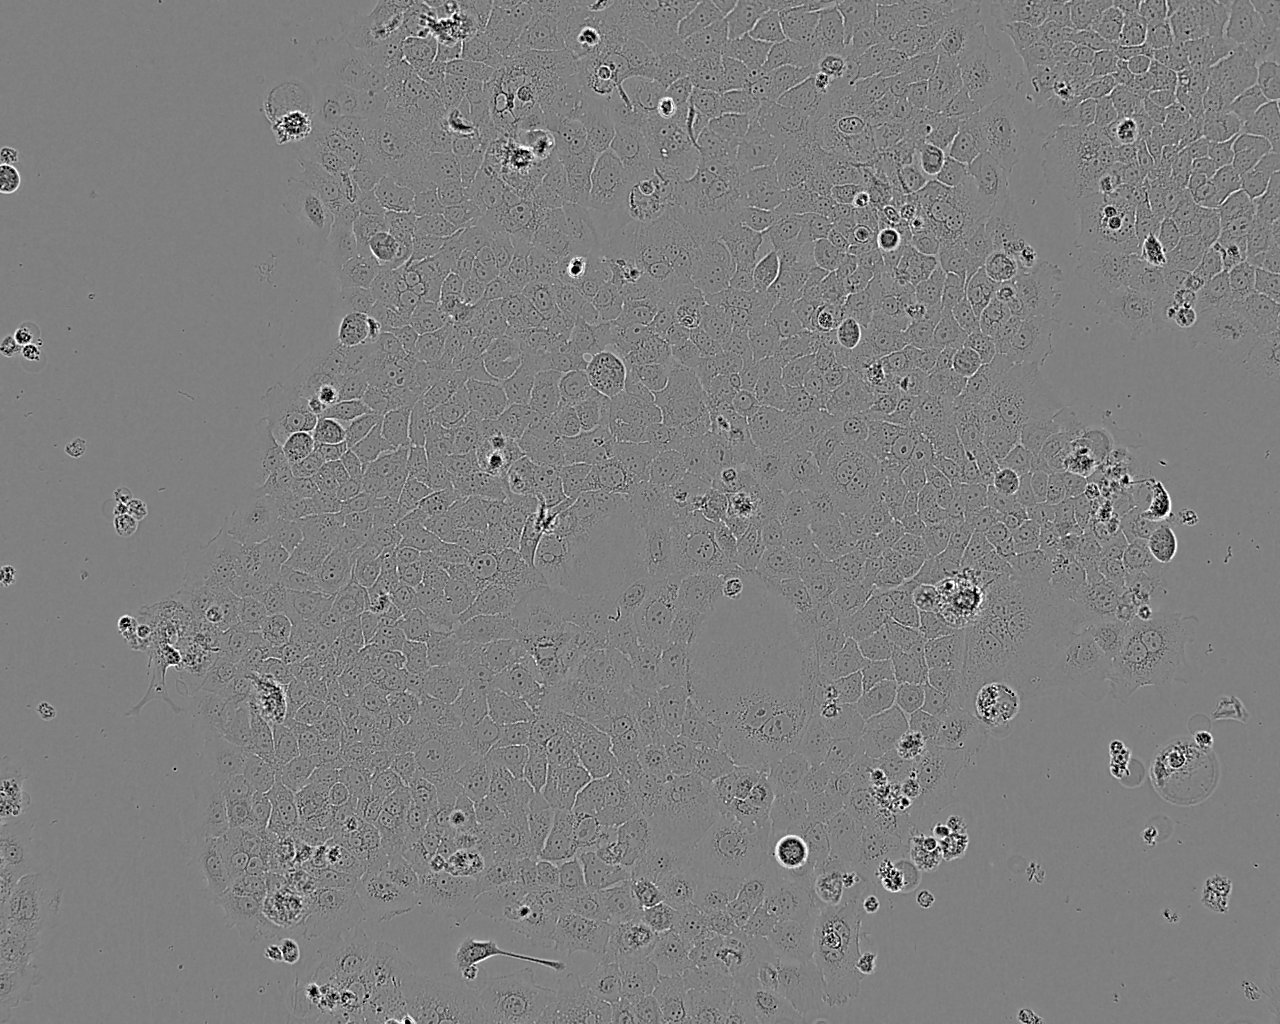 HeLa 229 epithelioid cells人宫颈癌细胞系,HeLa 229 epithelioid cells